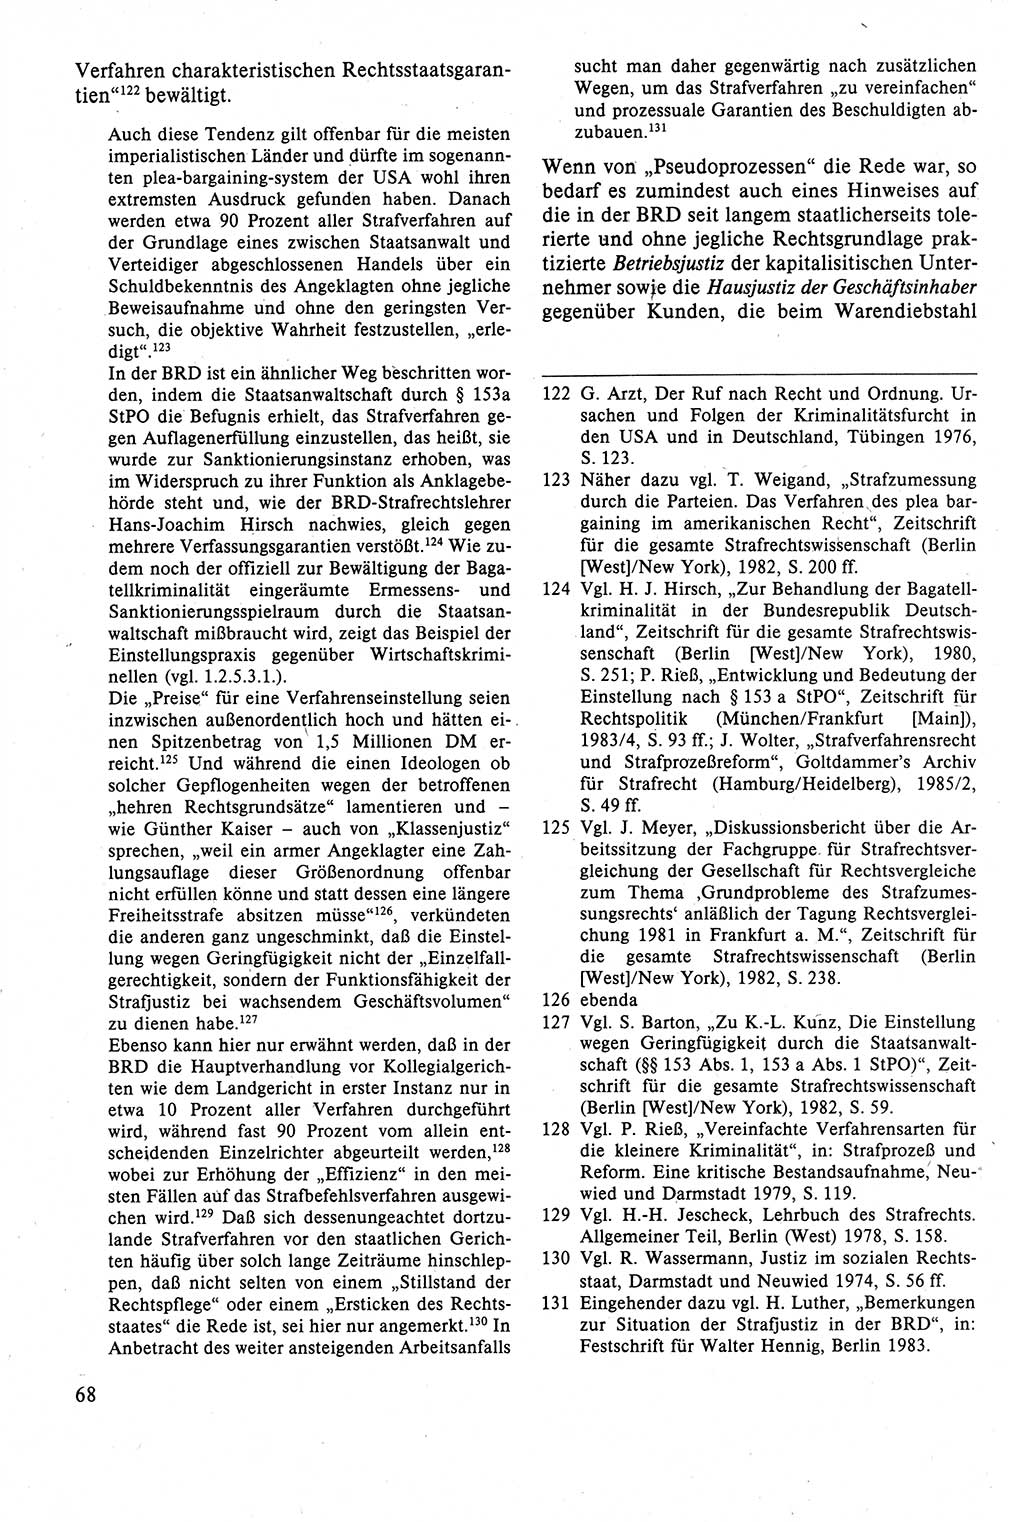 Strafrecht der DDR (Deutsche Demokratische Republik), Lehrbuch 1988, Seite 68 (Strafr. DDR Lb. 1988, S. 68)